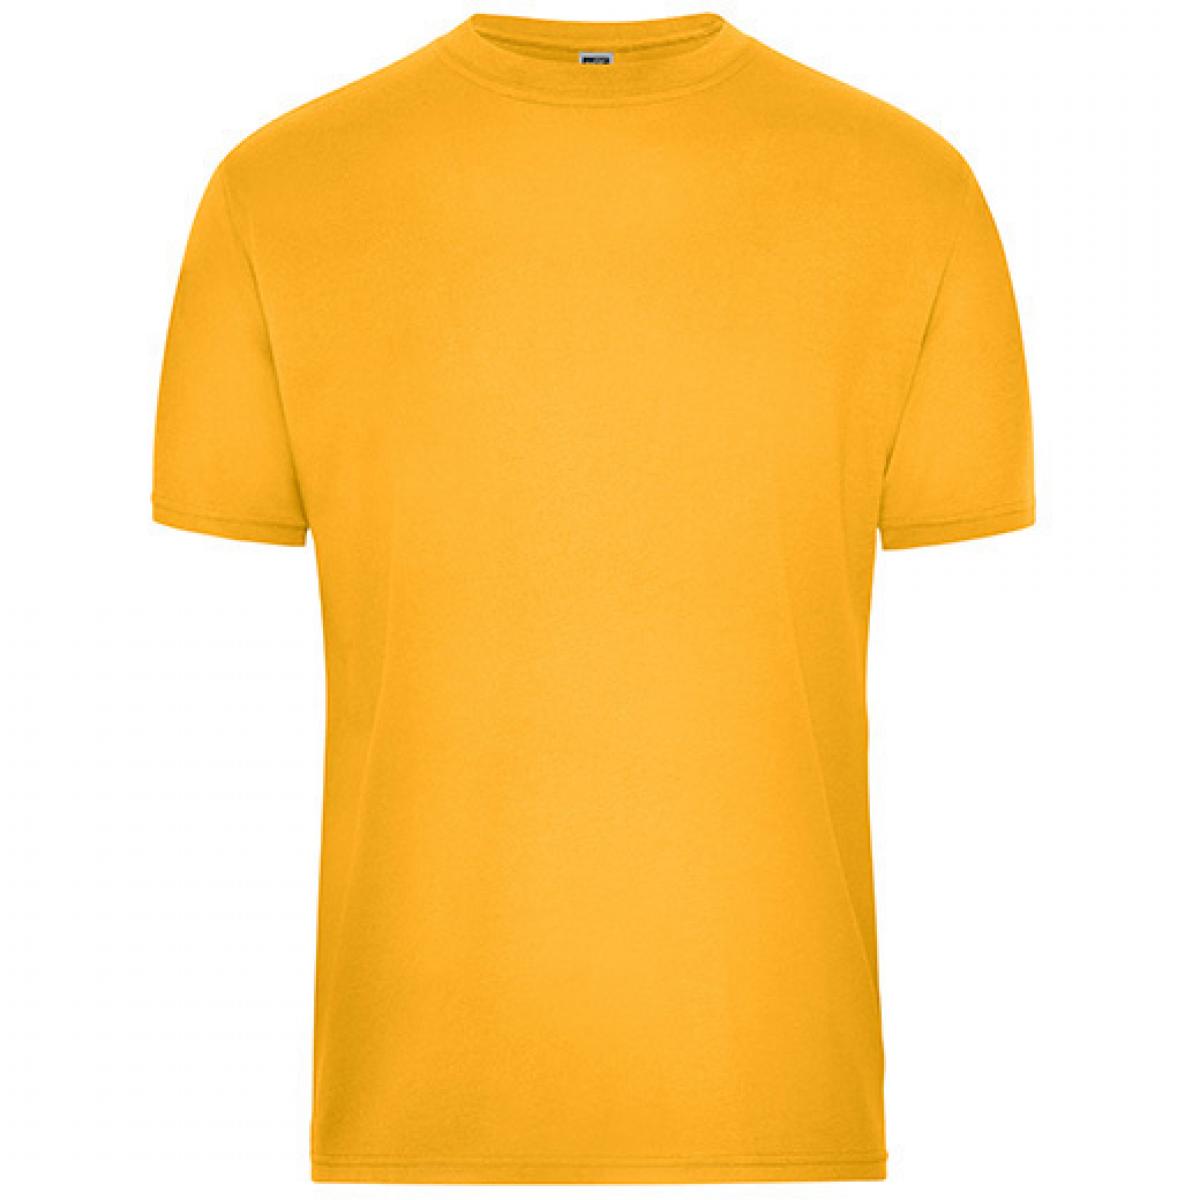 Hersteller: James+Nicholson Herstellernummer: JN1808 Artikelbezeichnung: Men‘s BIO Workwear T-Shirt, Waschbar bis 60 °C Farbe: Gold Yellow